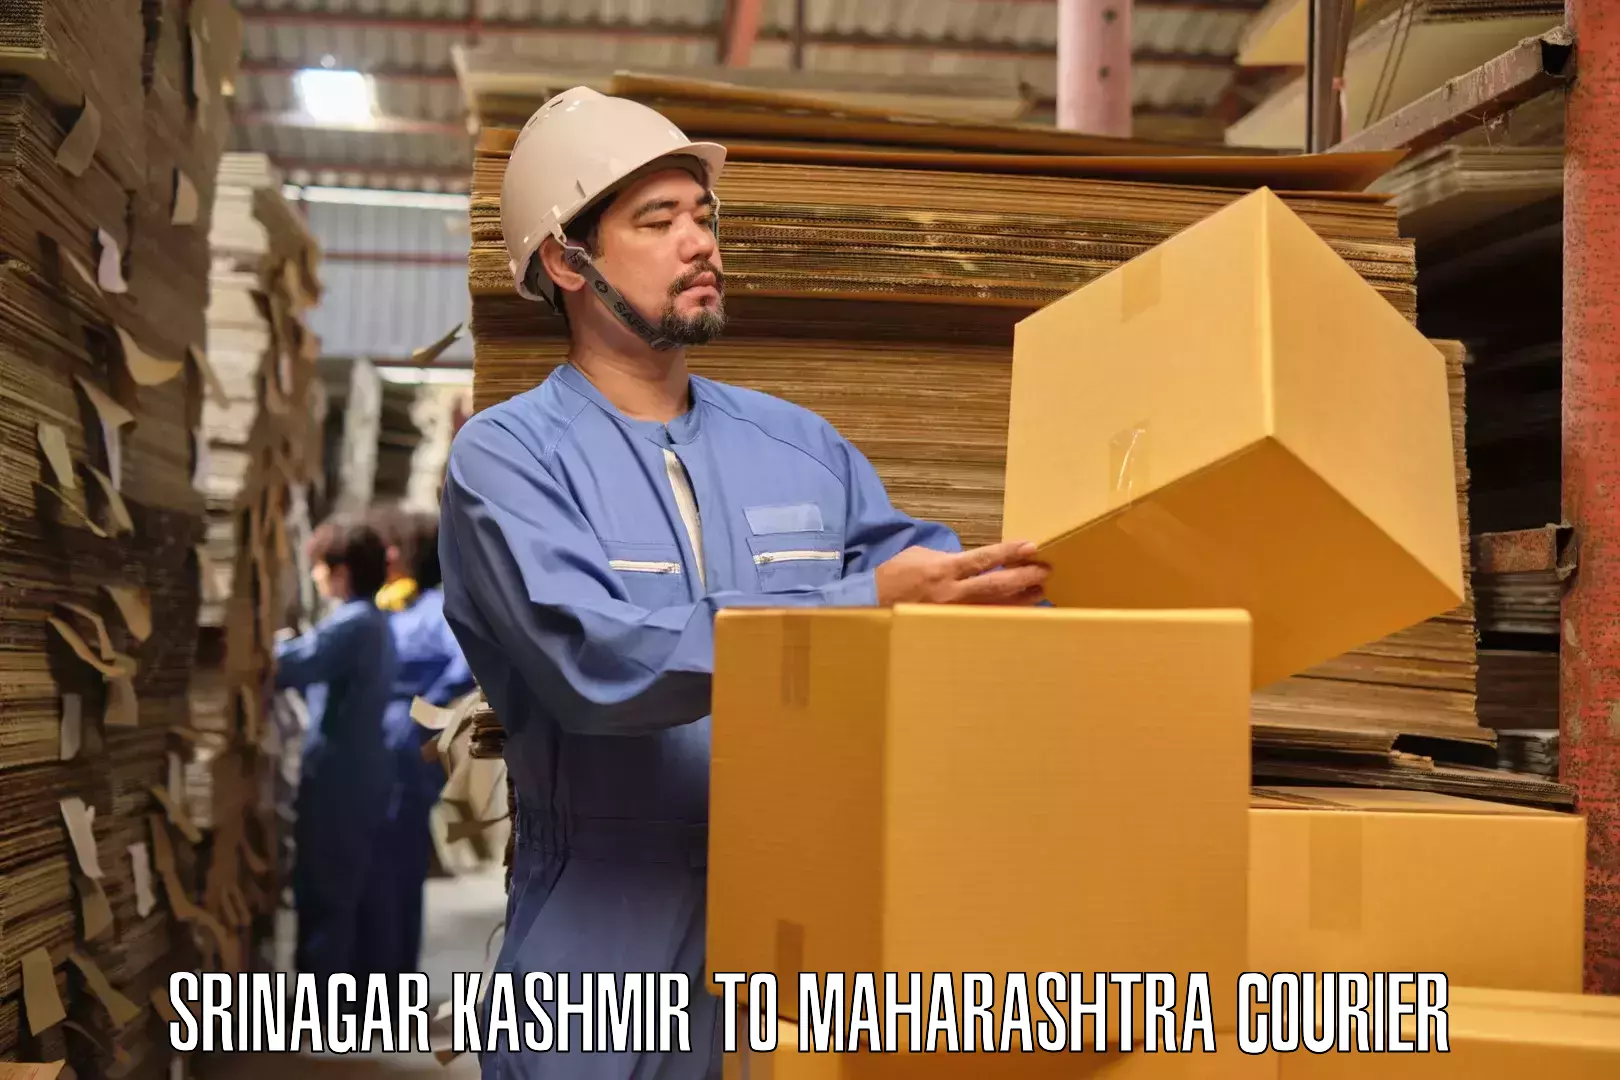 Specialized moving company Srinagar Kashmir to Shrigonda